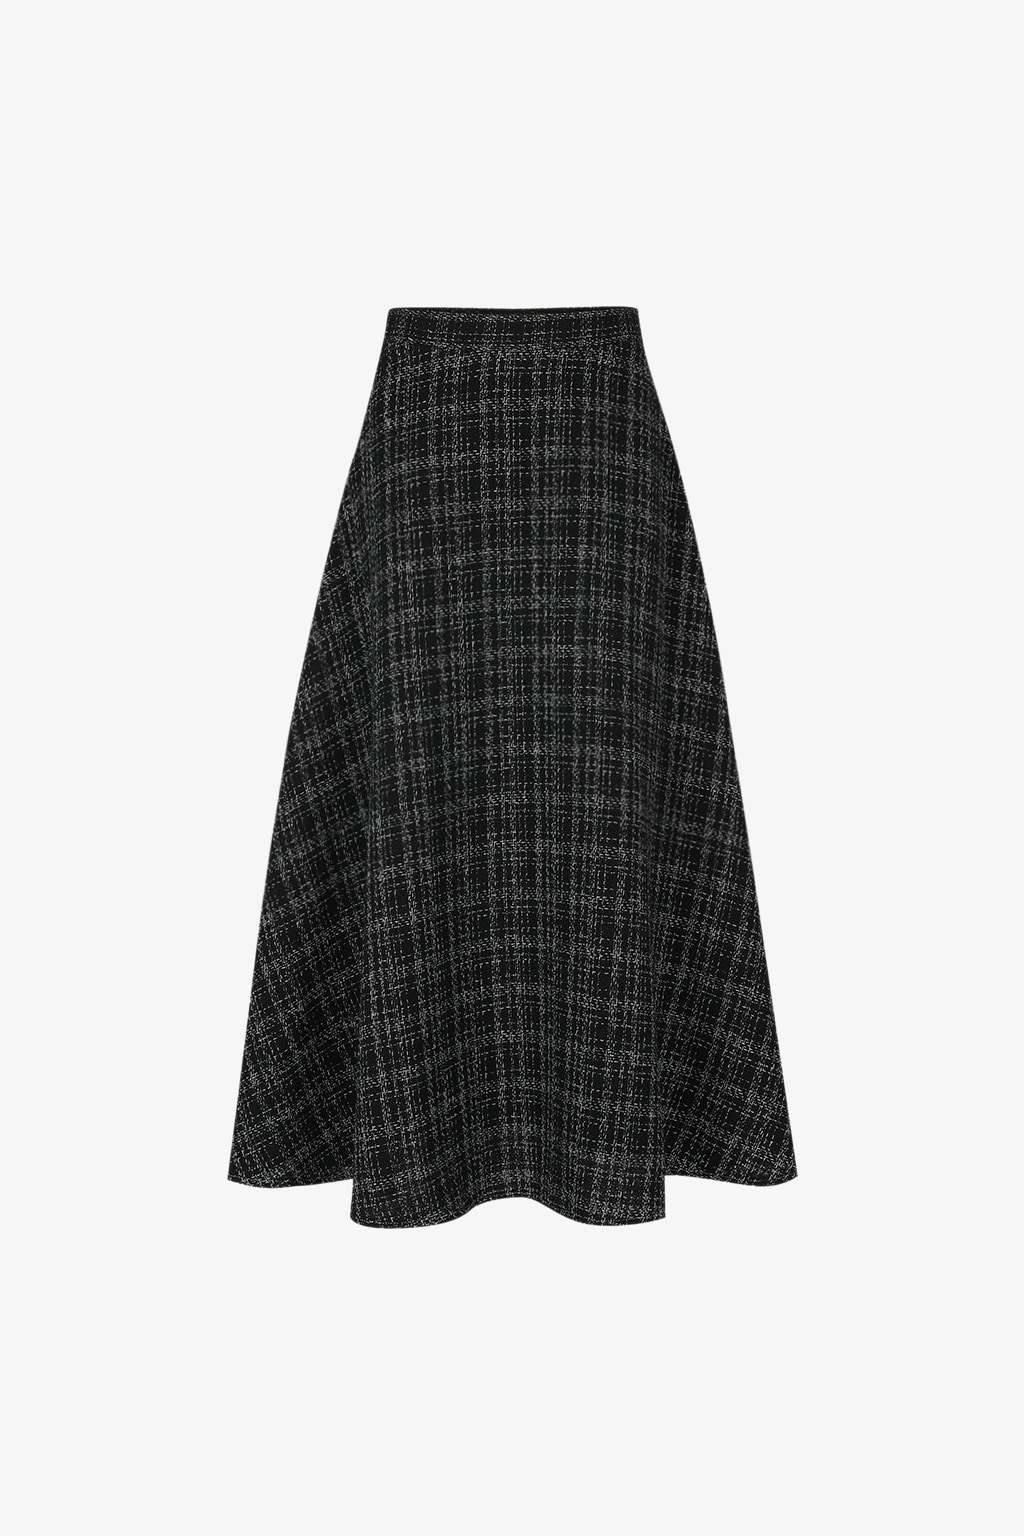 [SALE] notting hill skirt